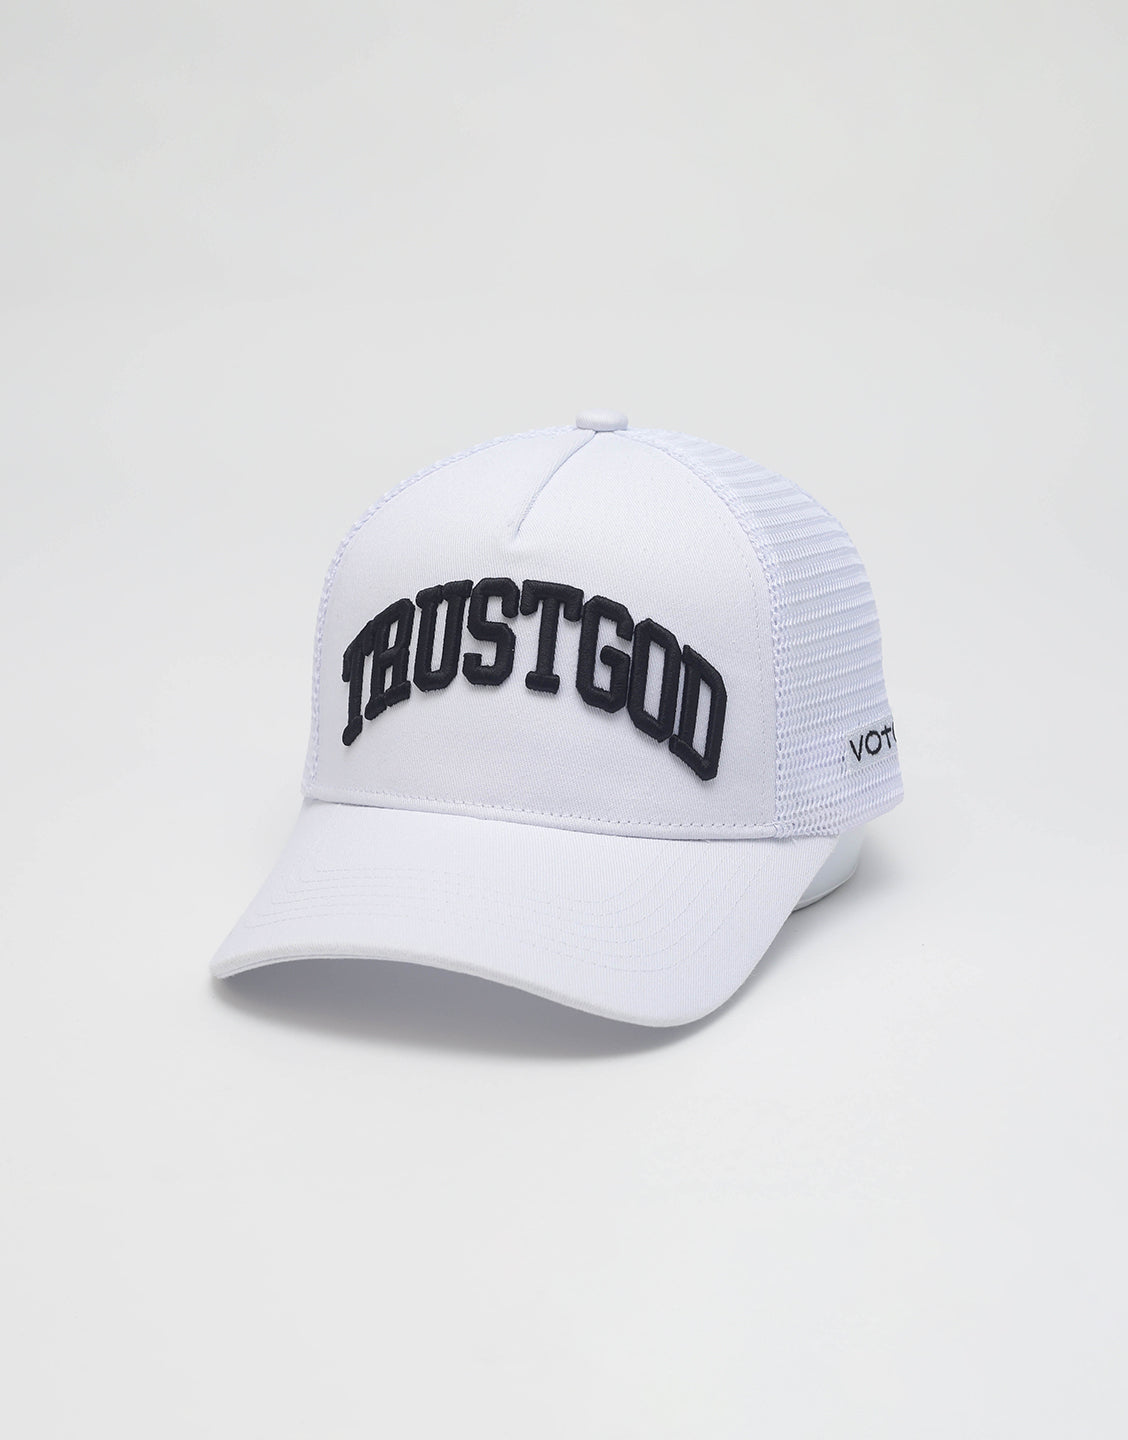 Trust God Premium Trucker Hat - White